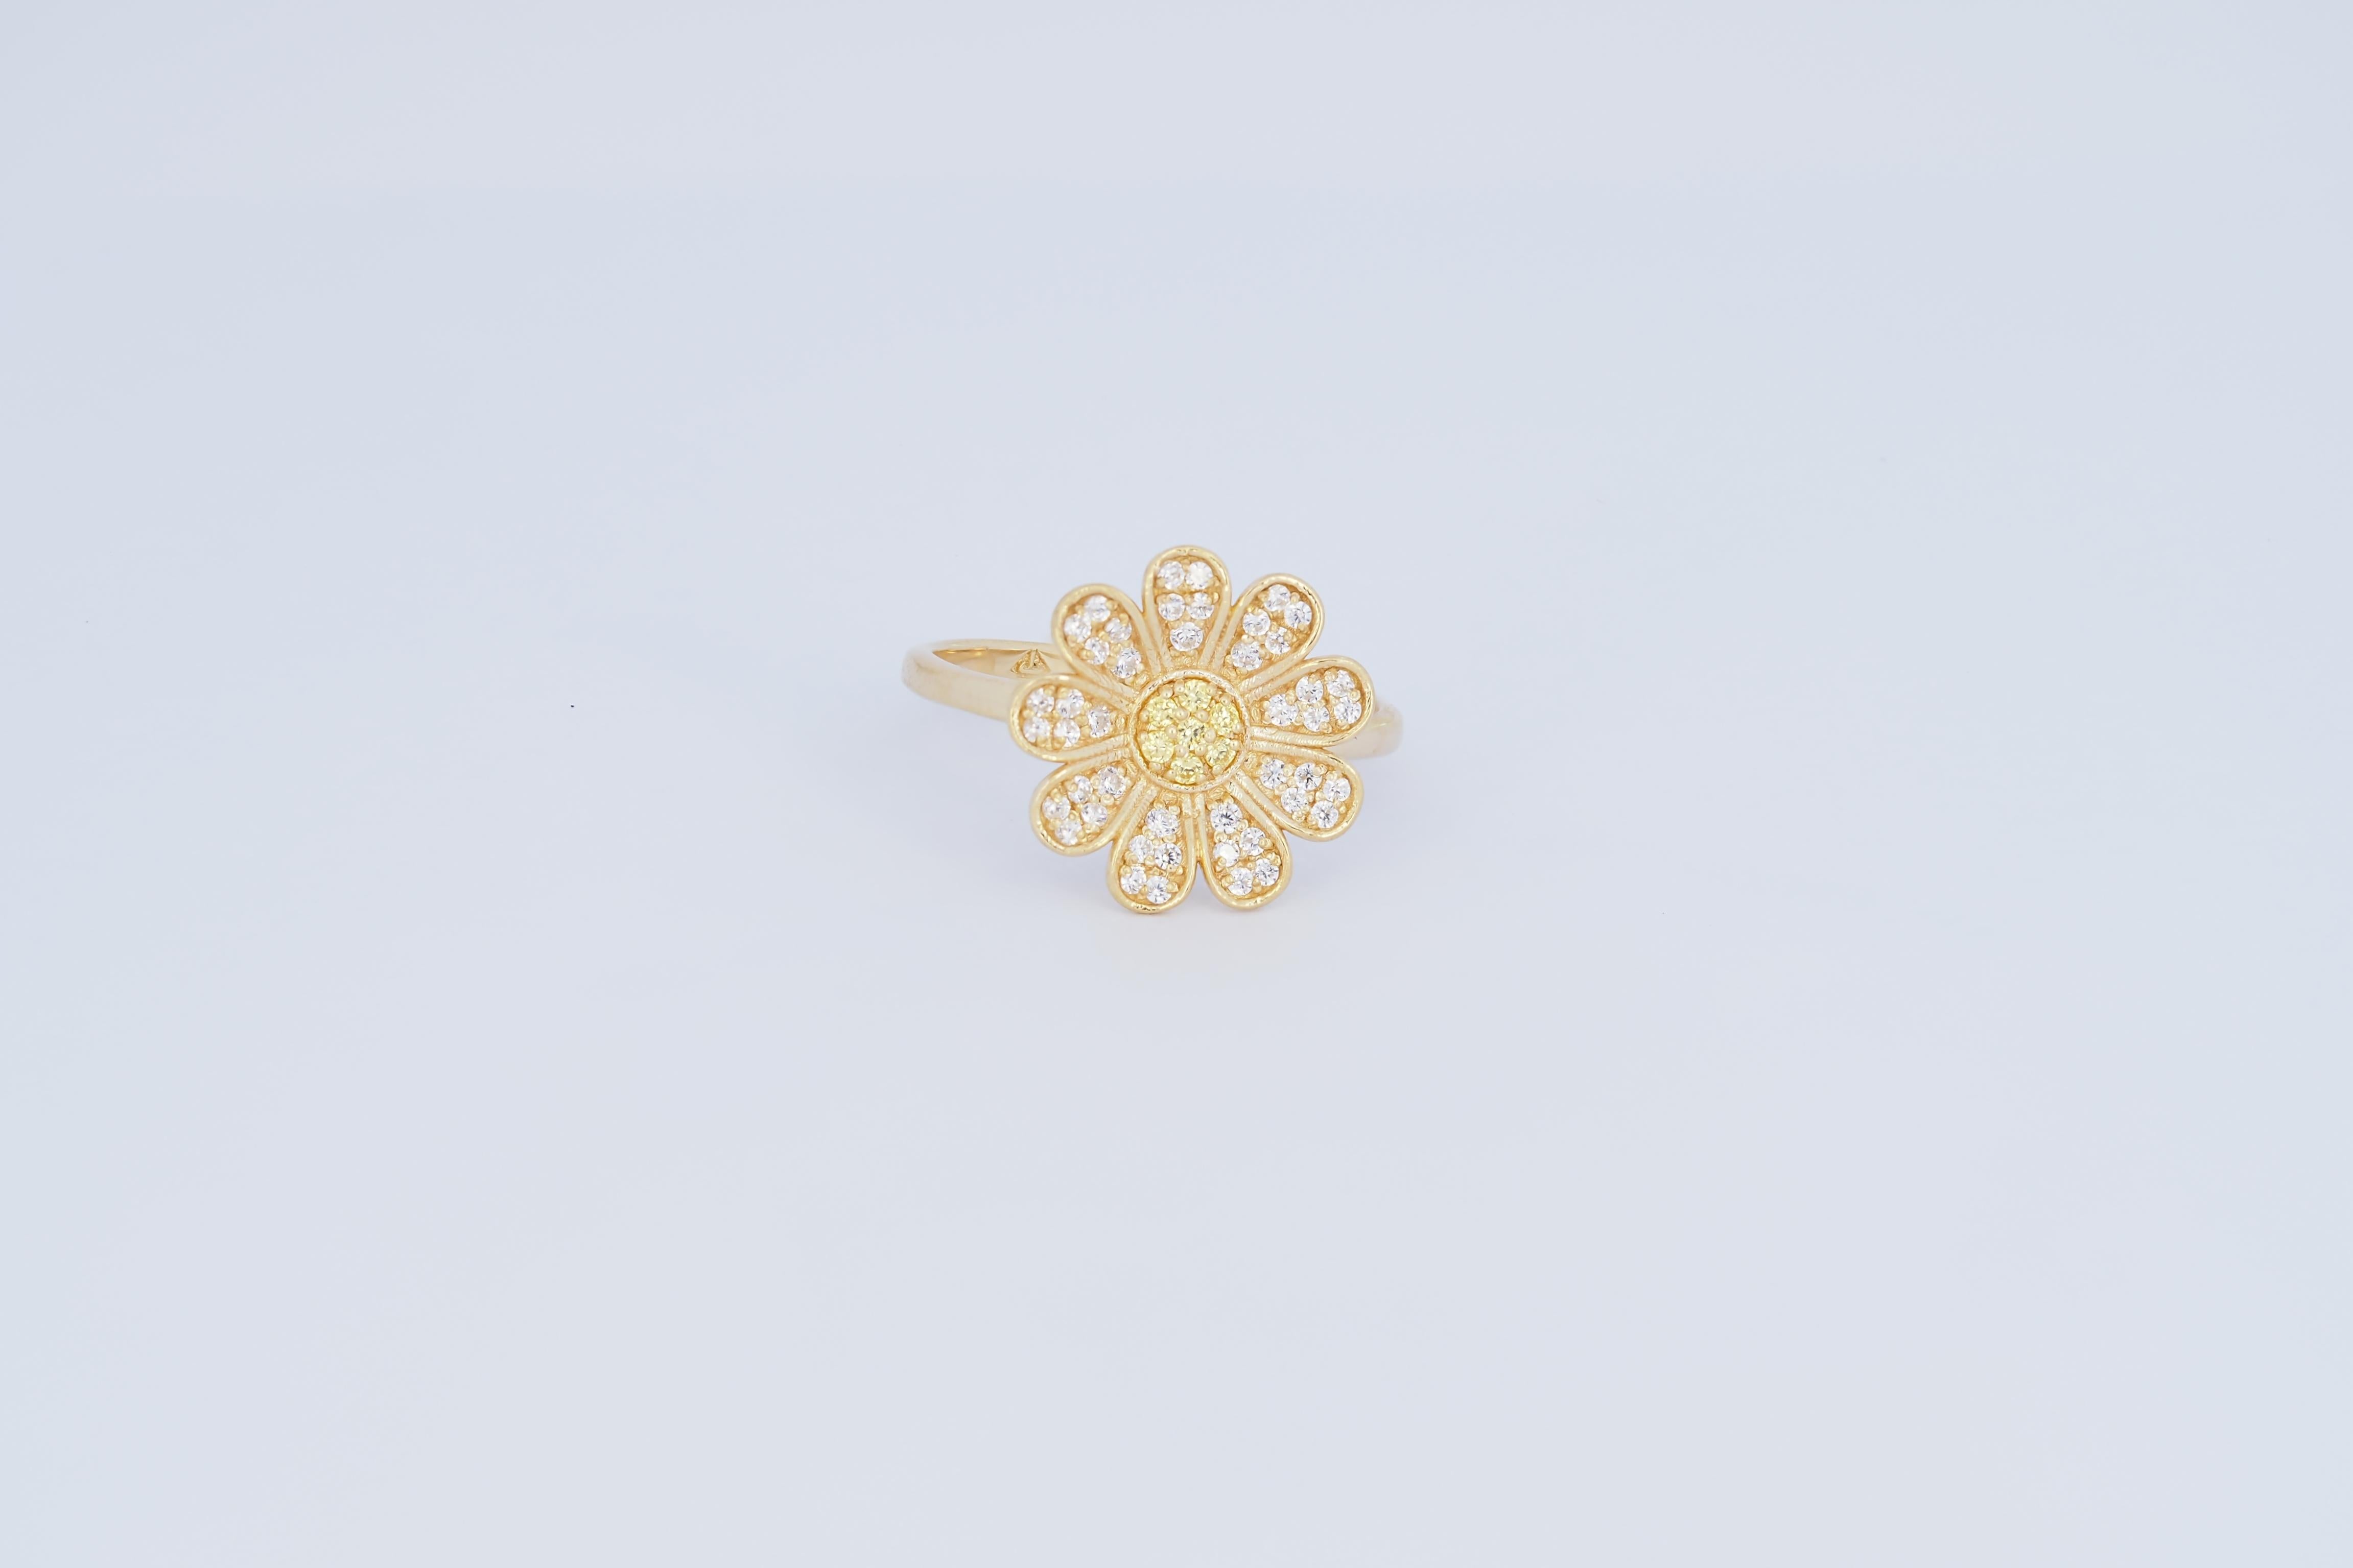 Daisy flower 14k gold ring 3